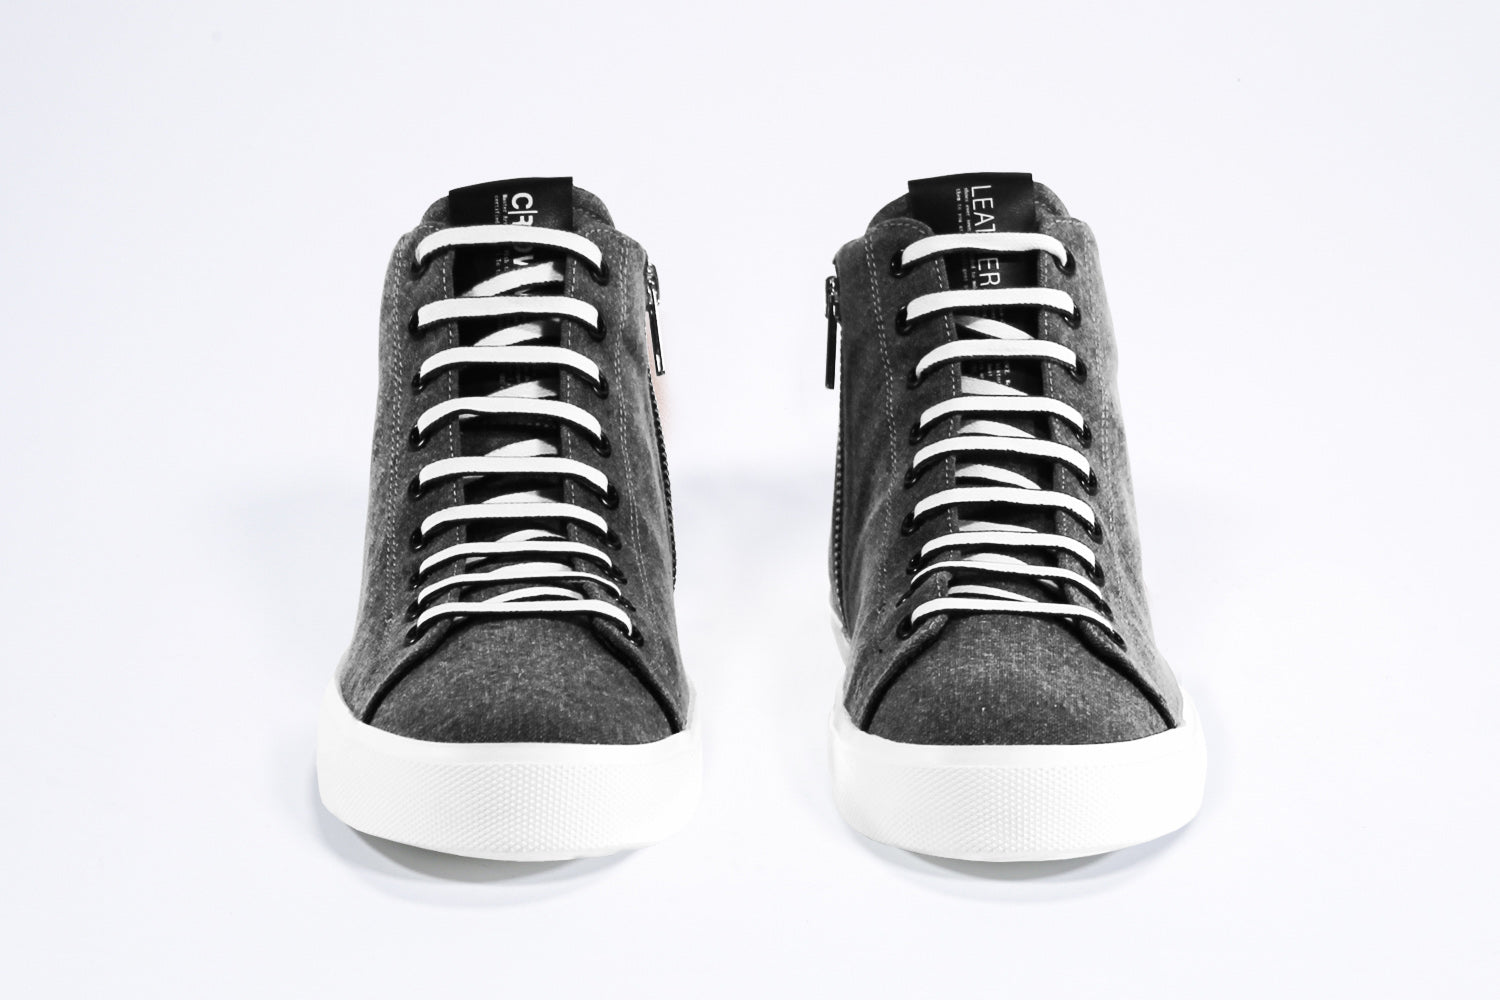 Vorderansicht von sneaker mit schwarzem Obermaterial aus Segeltuch und Leder, Innenreißverschluss und weißer Sohle.